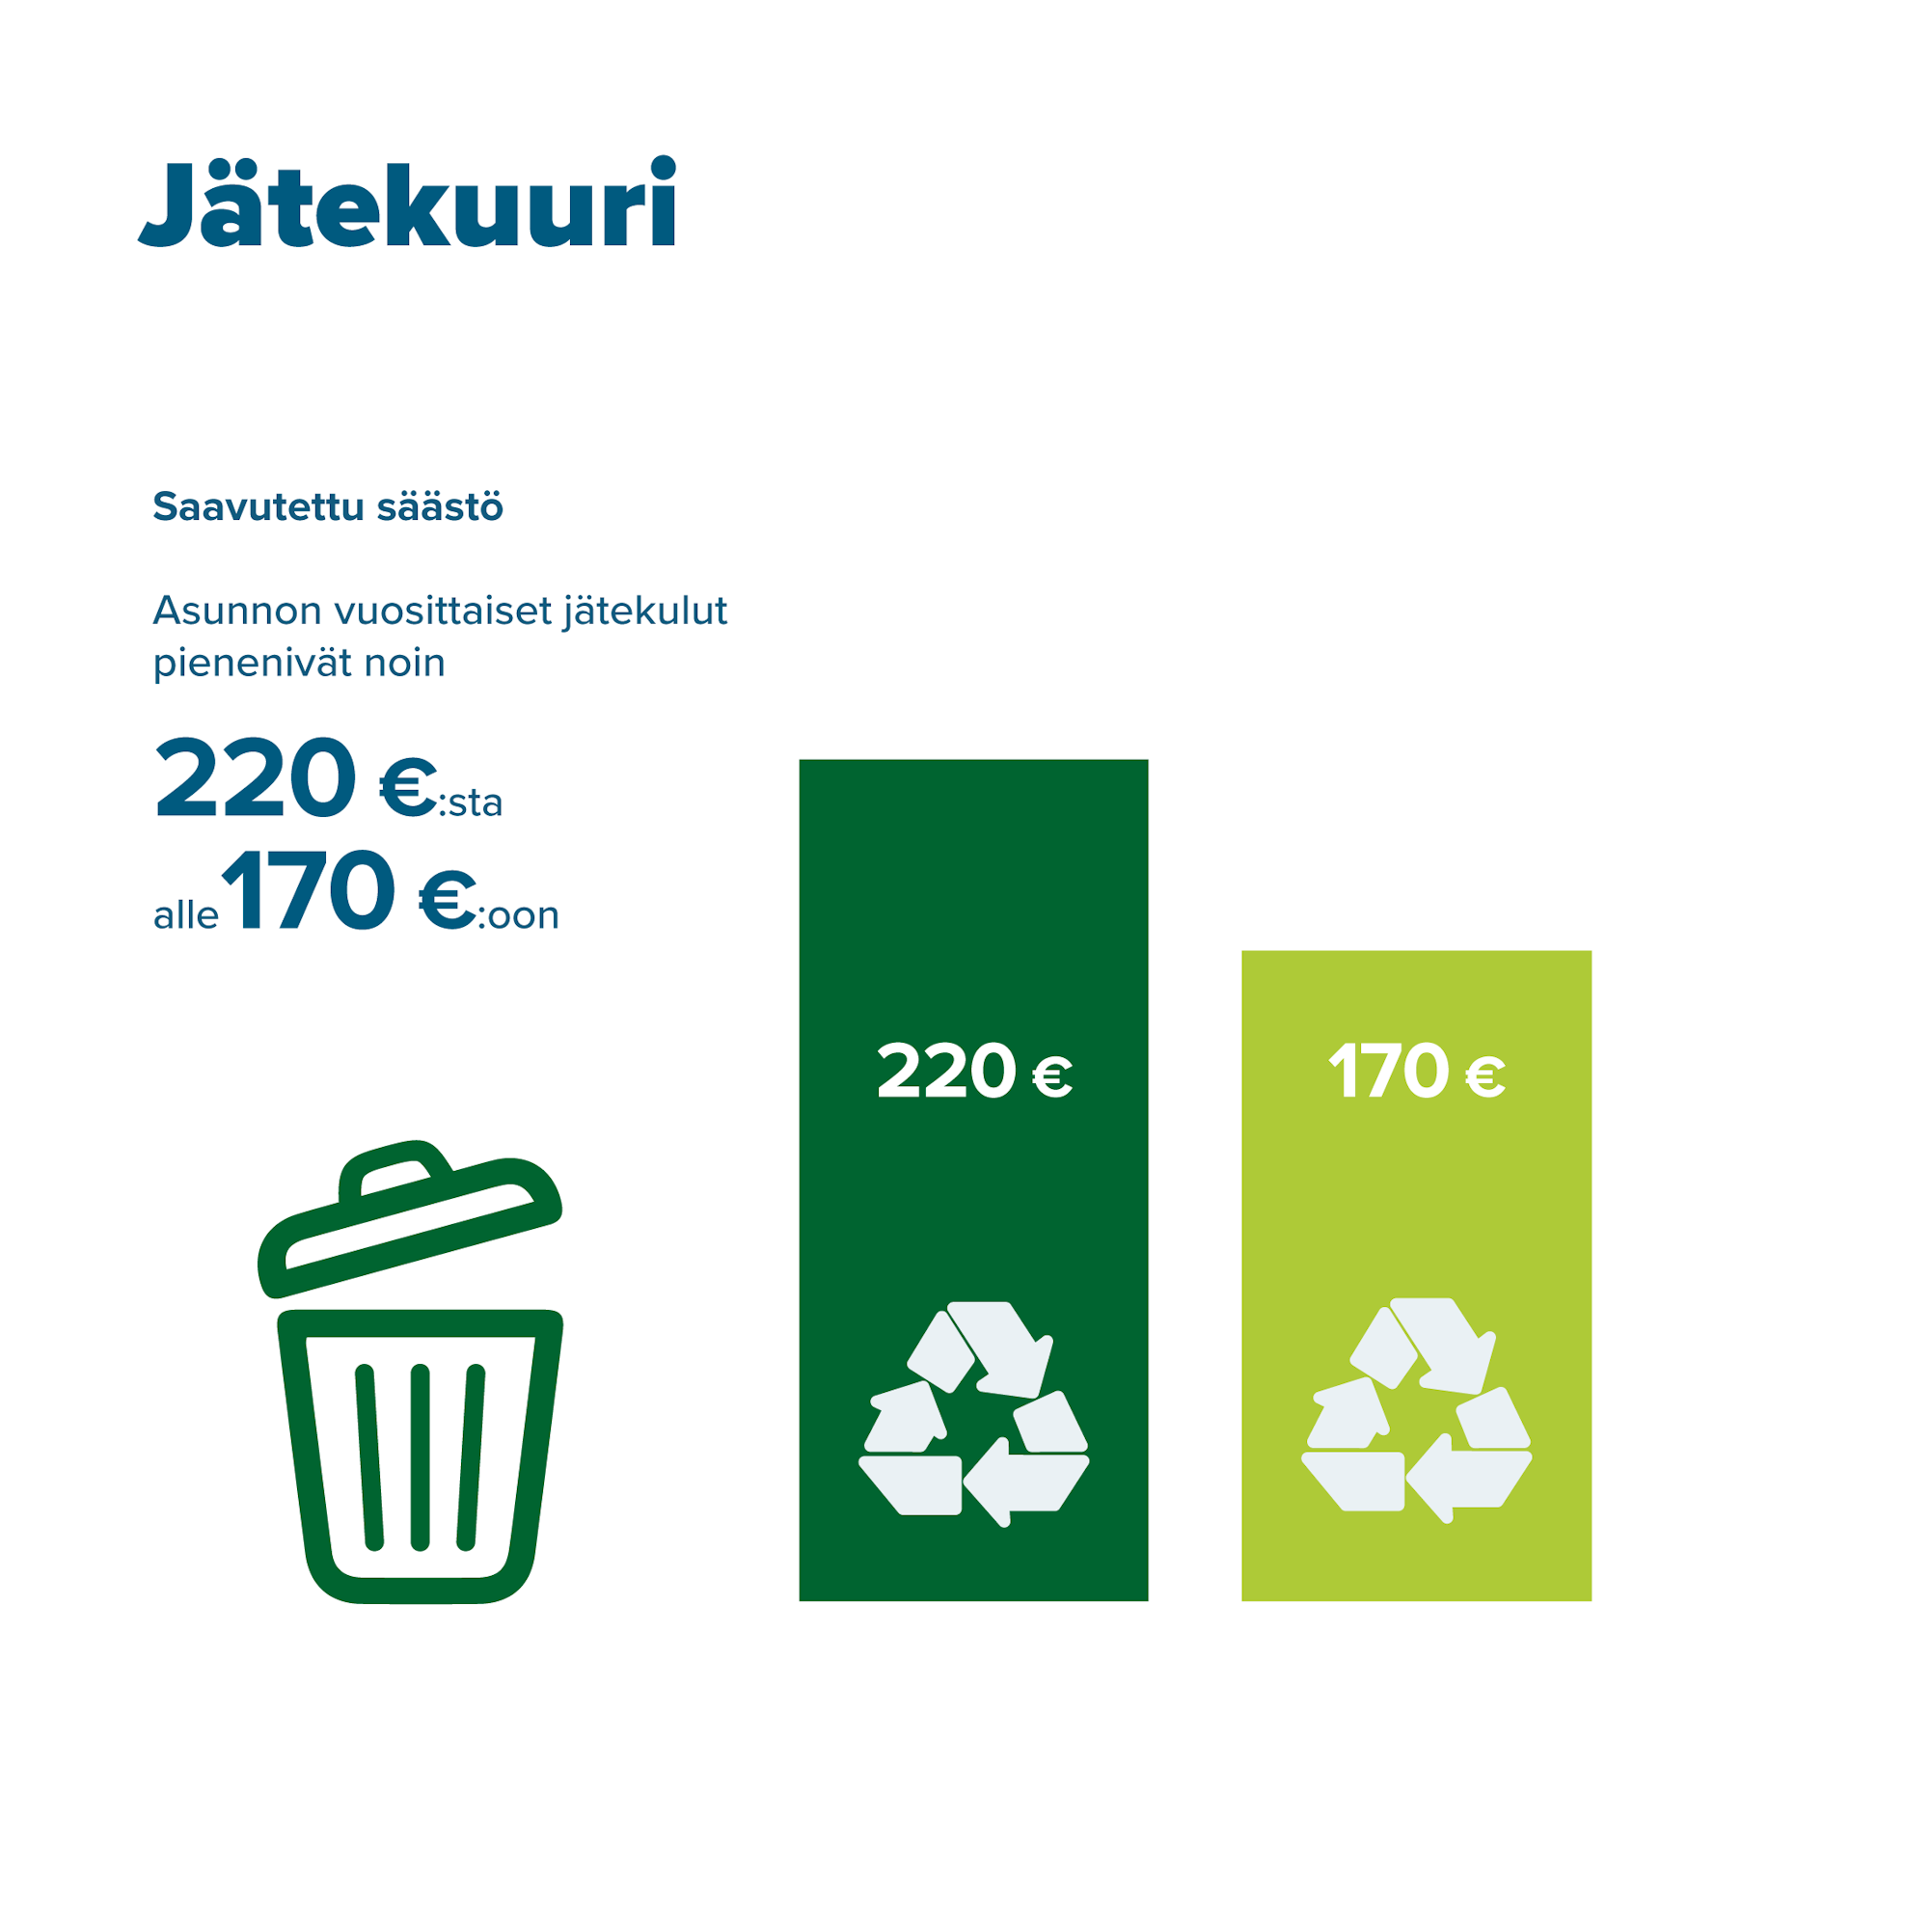 Jätekuuri. Saavutettu säästö: asunnon vuosittaiset jätekulut pienenivät noin 220 eurosta alle 170 euroon. 